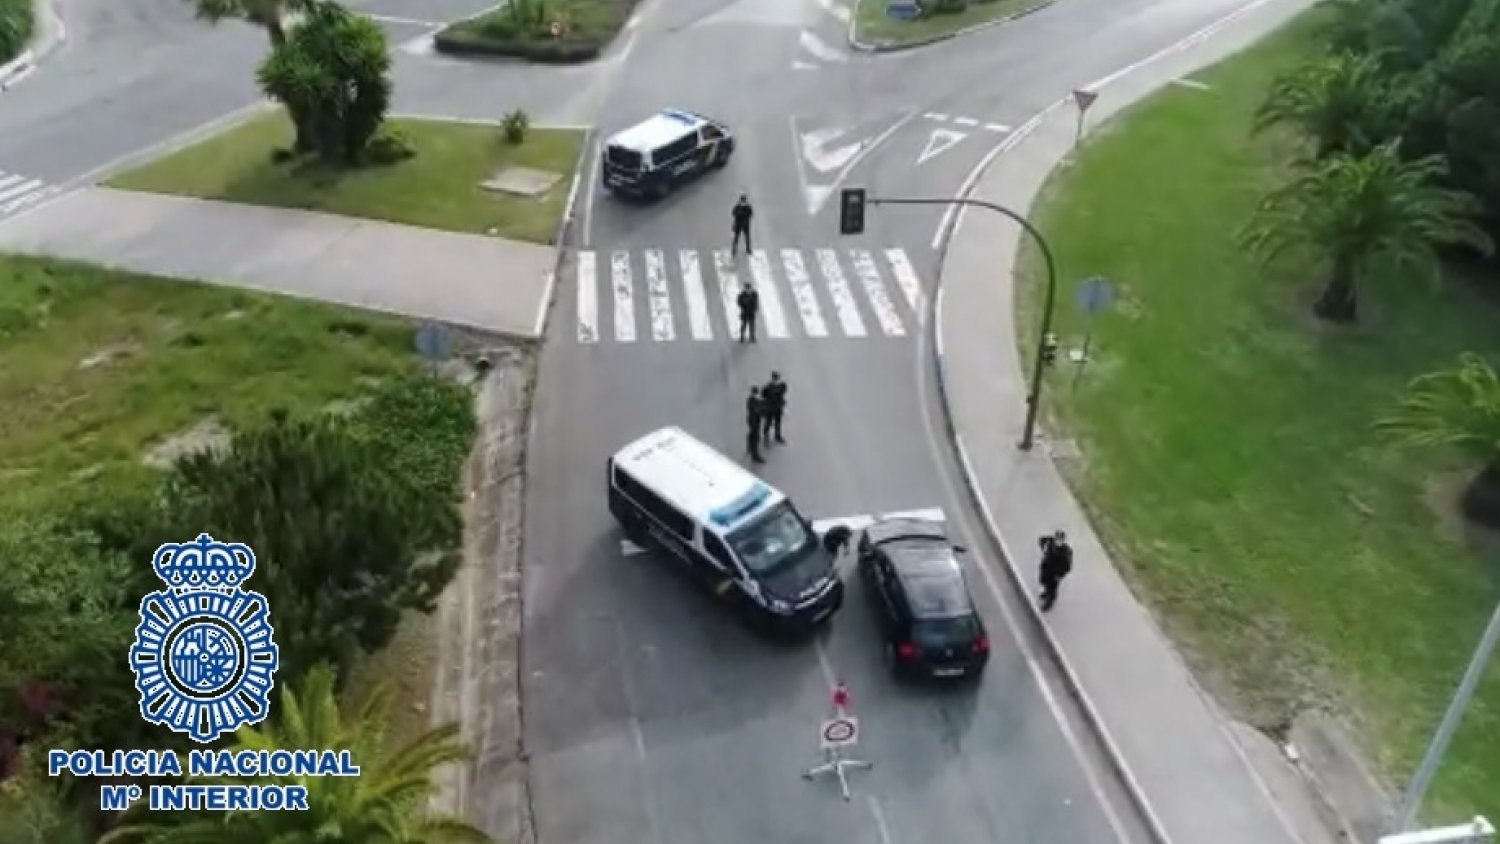 La Policía Nacional detiene en Marbella a los ocupantes de un vehículo tras localizar un arma de fuego